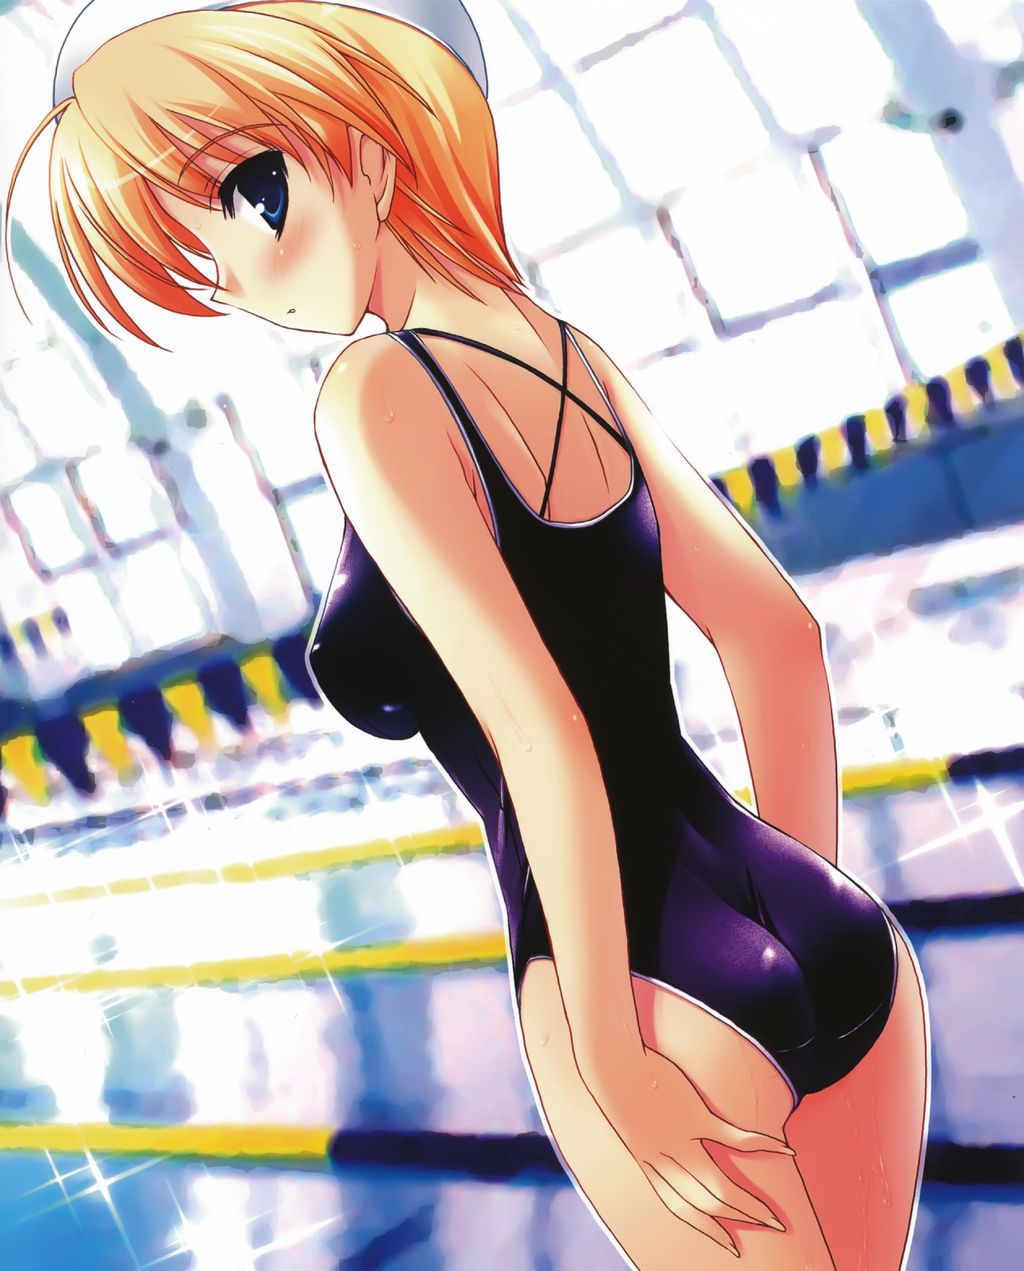 [2次] emphasizes body swimsuit girl second erotic pictures part II [swimwear] 12